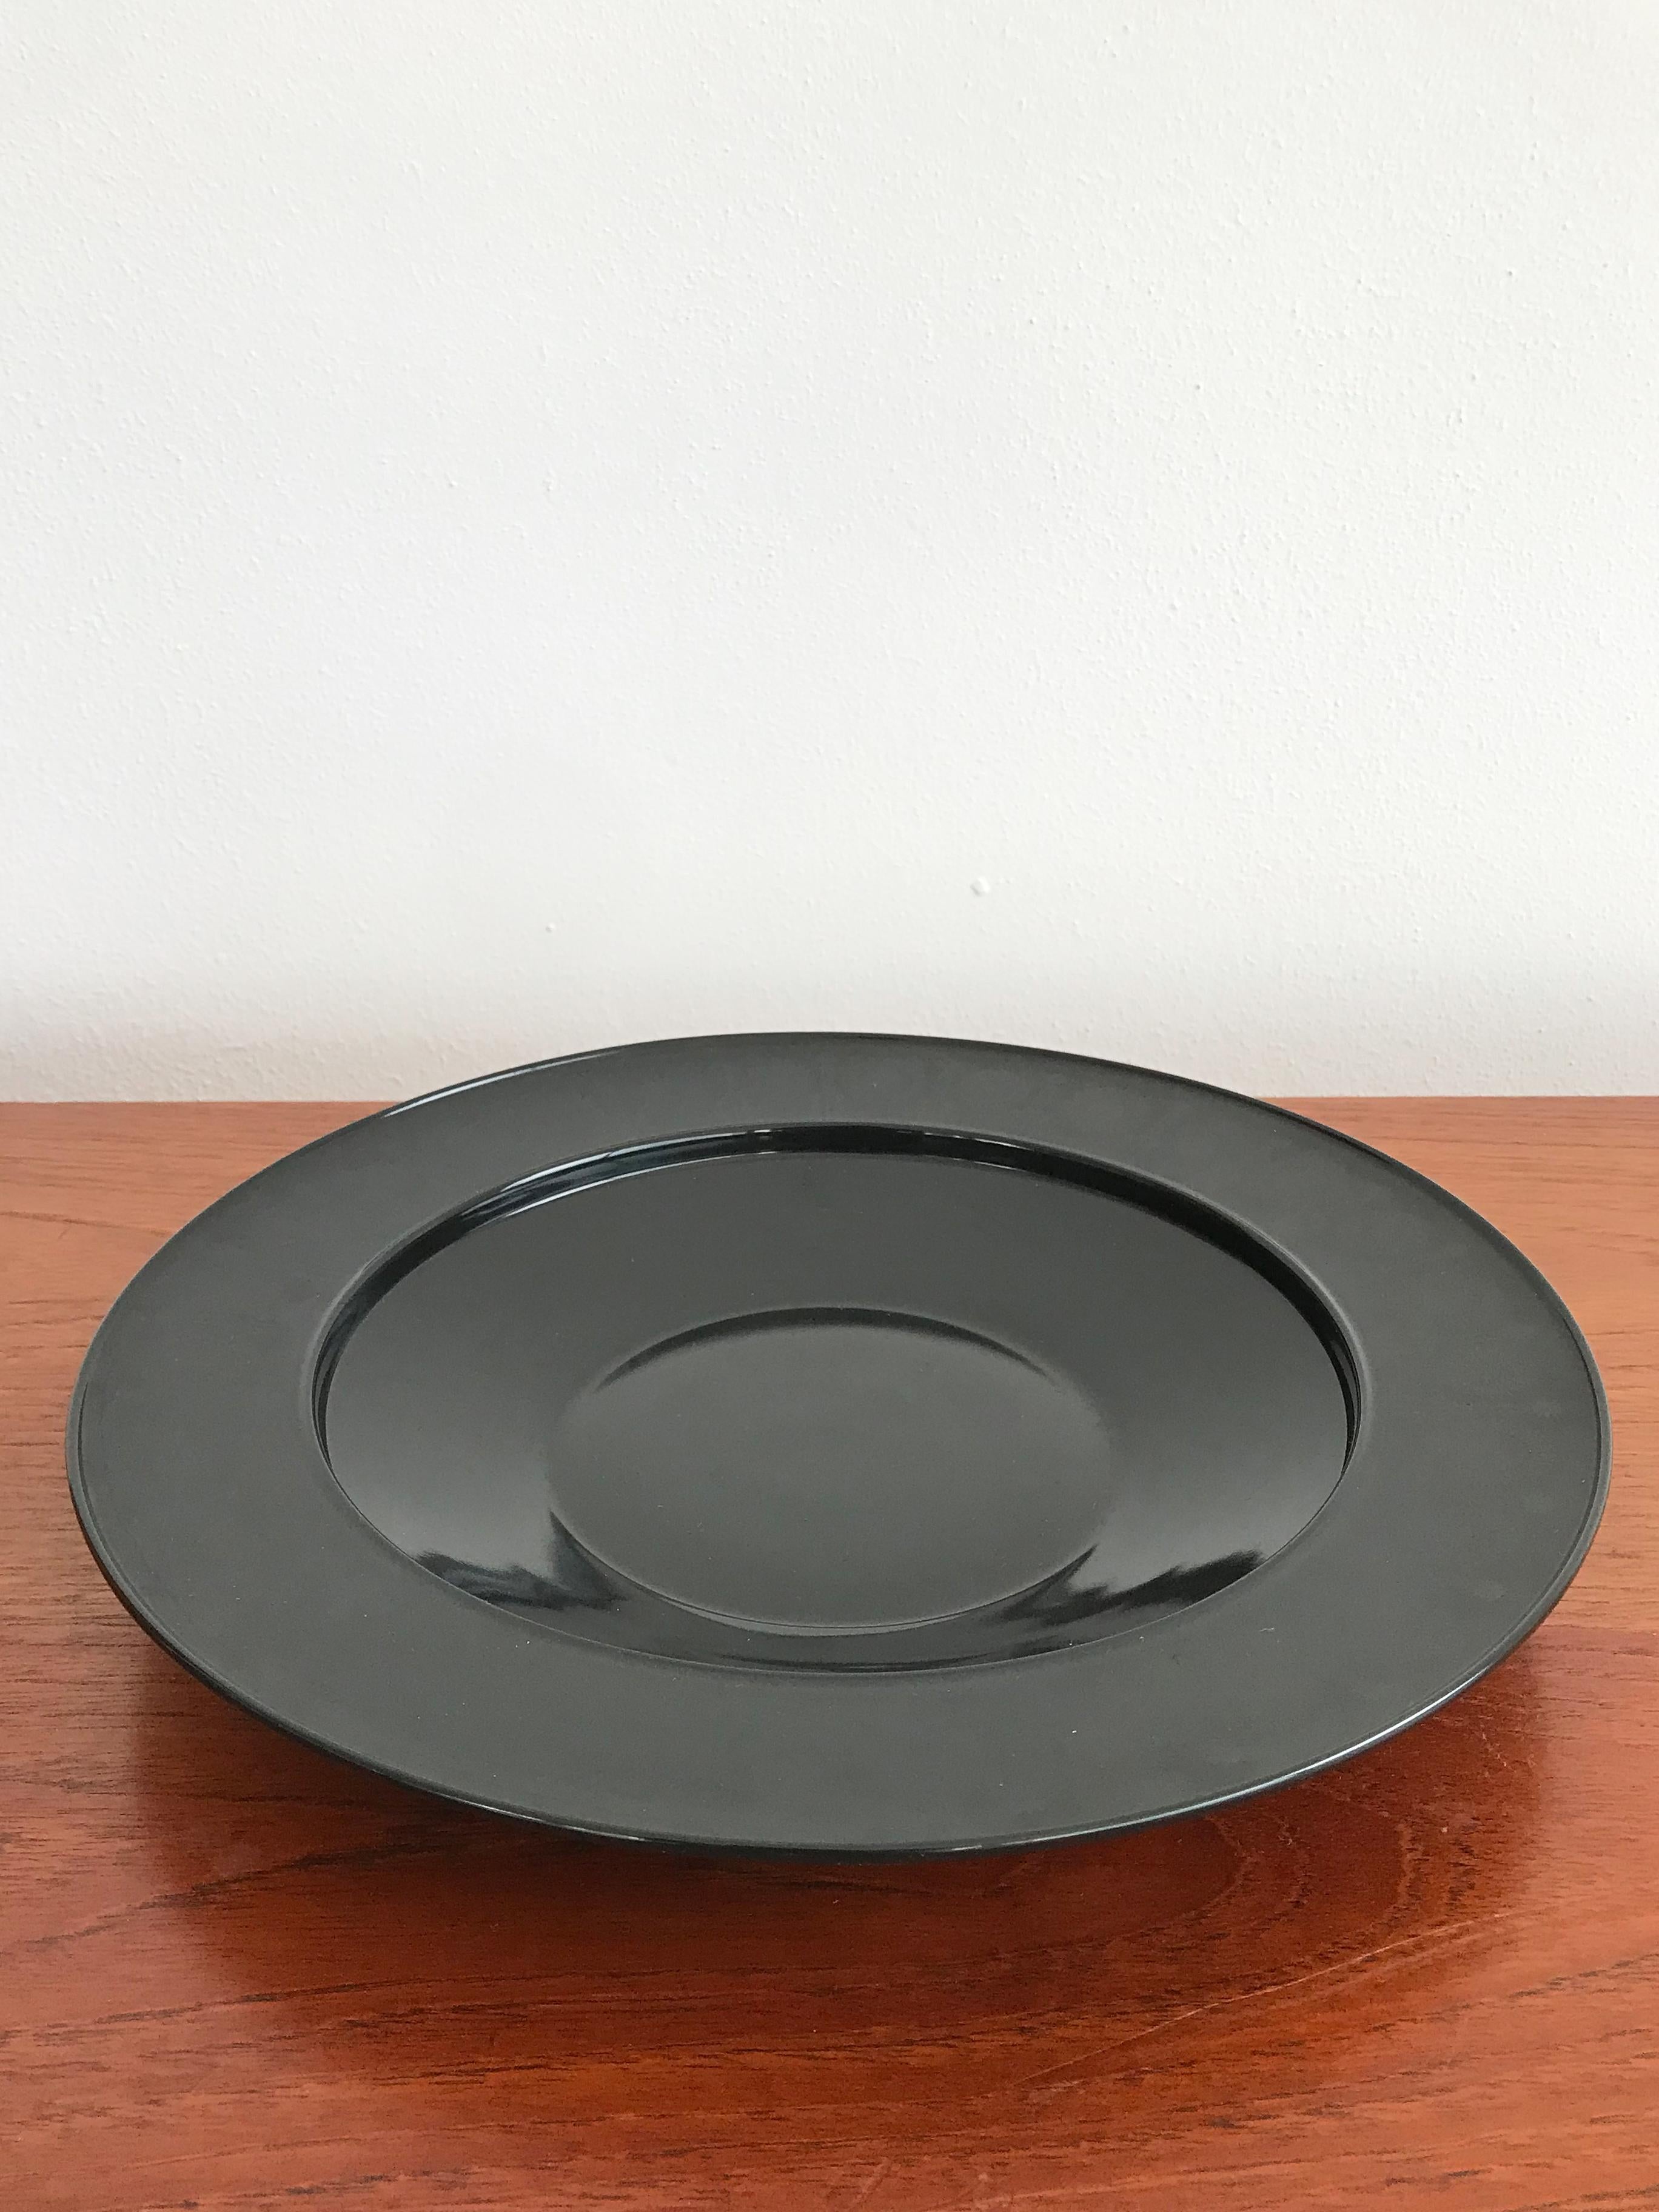 Centre de table, coupe à fruits, assiette en porcelaine noire, modernisme vintage,
conçu par Tapio Wirkkala pour Rosenthal Studio Linie série 